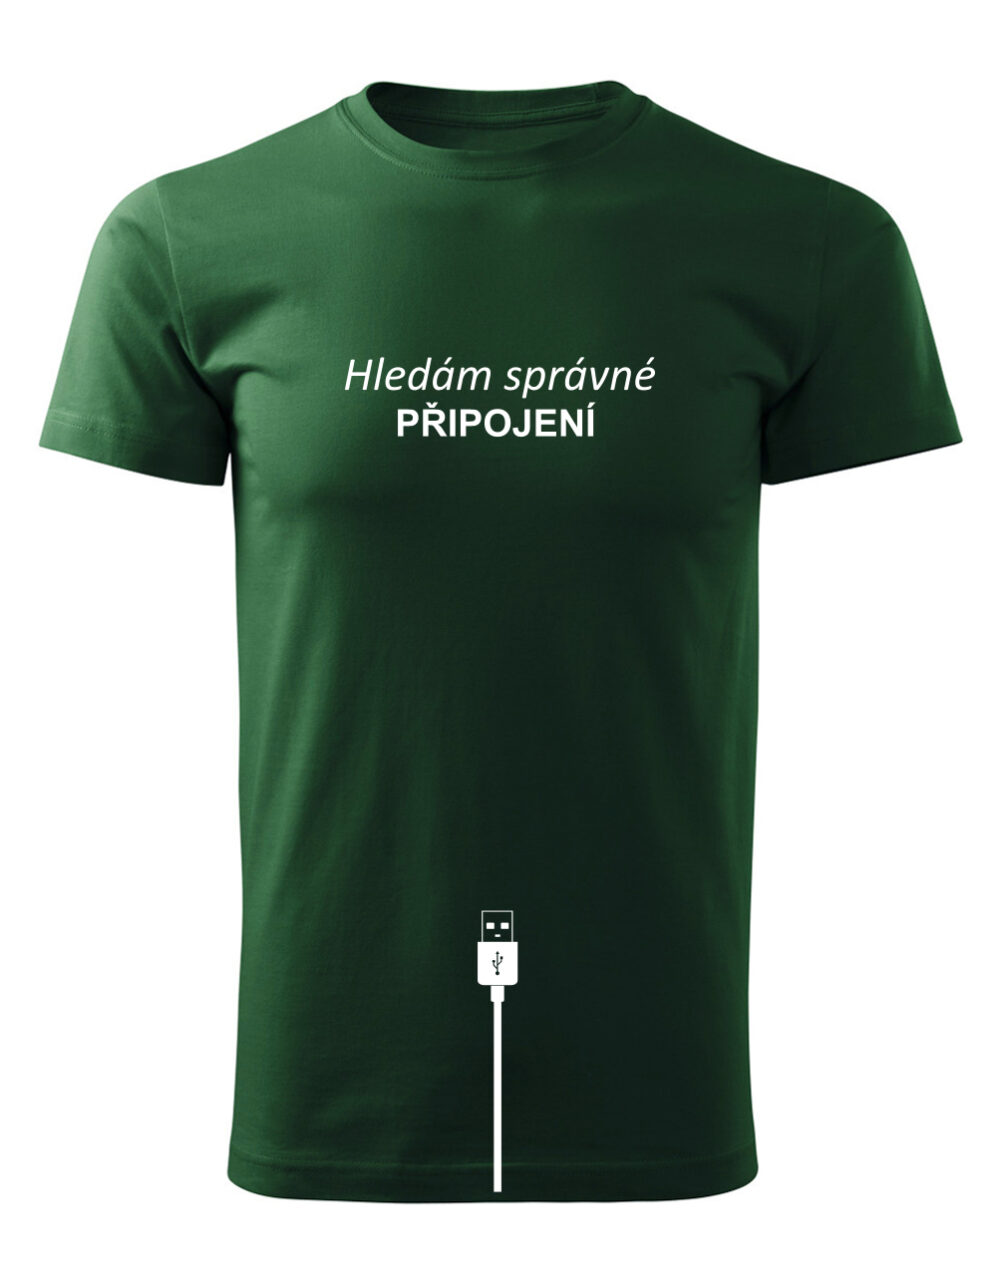 Pánské tričko s potiskem Hledám správné připojení lahvově zelená